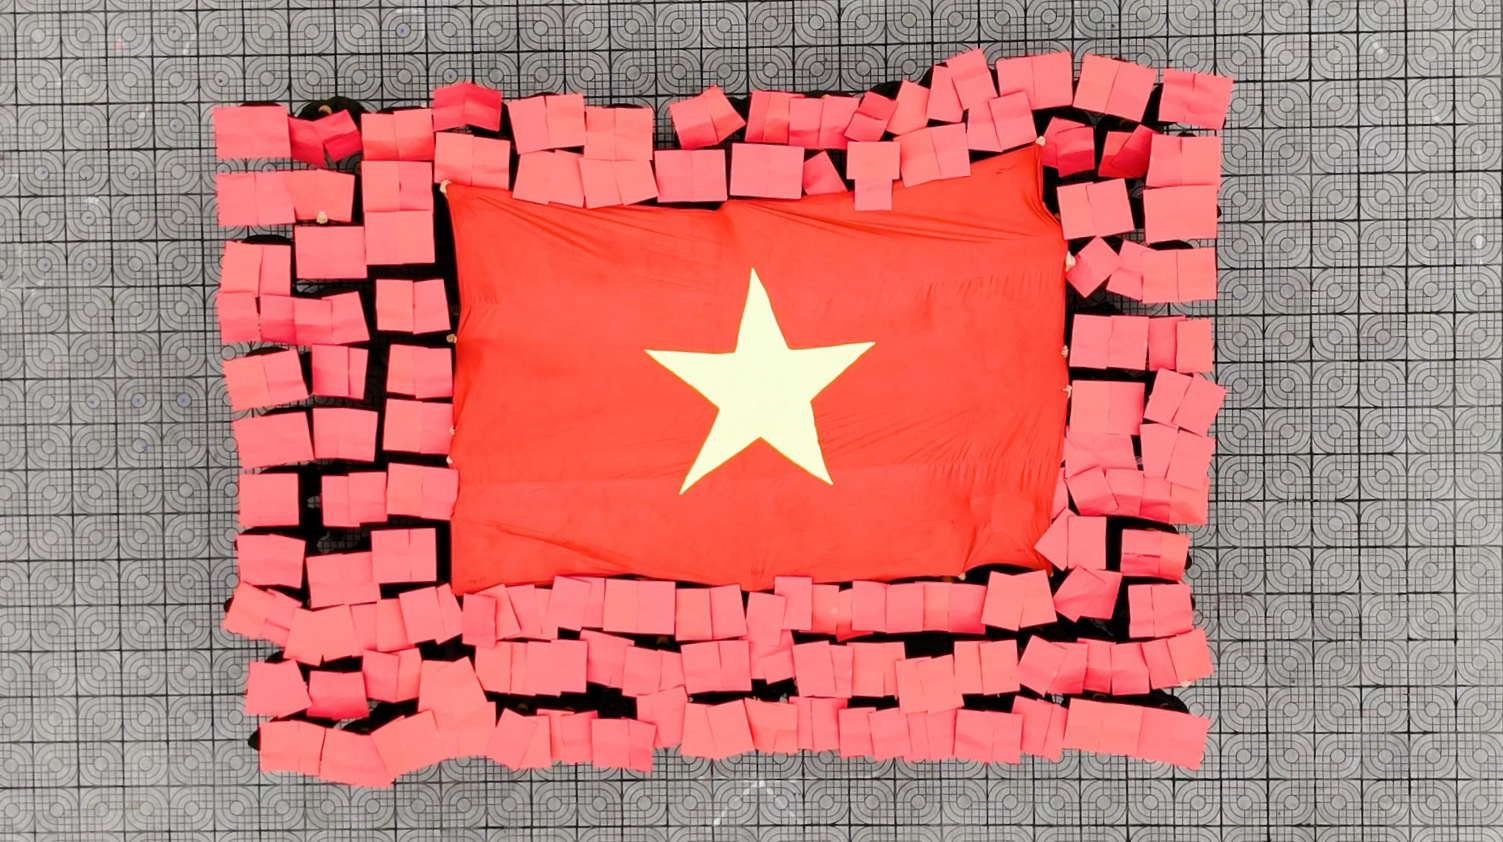 Hơn 100 chiến sĩ công an ở Hà Nội xếp hình cờ Tổ quốc và bản đồ Việt Nam- Ảnh 3.